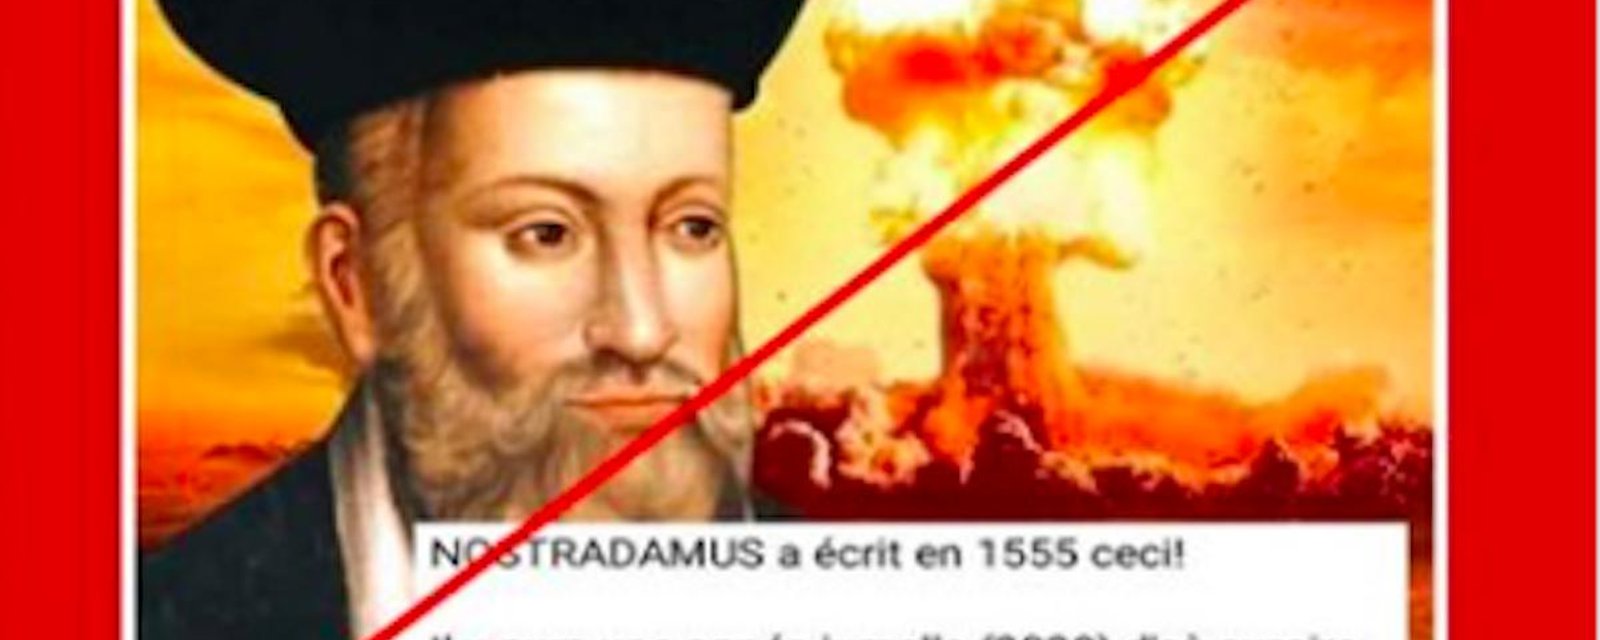 Nostradamus n’a pas prédit la Covid-19